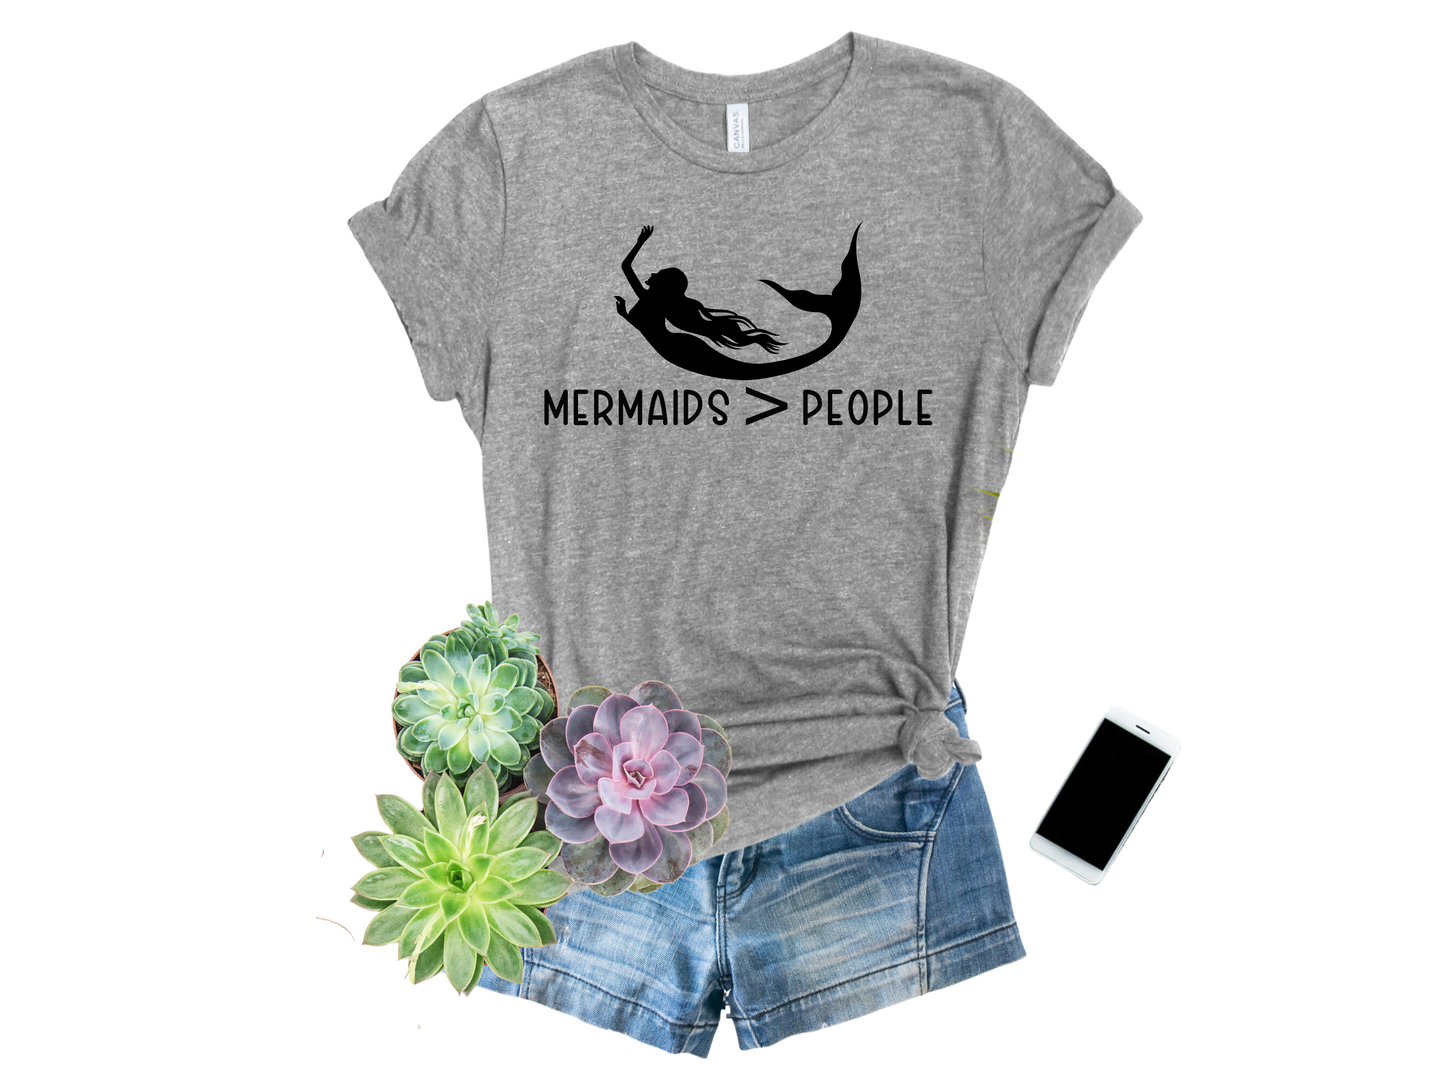 Mermaids > People